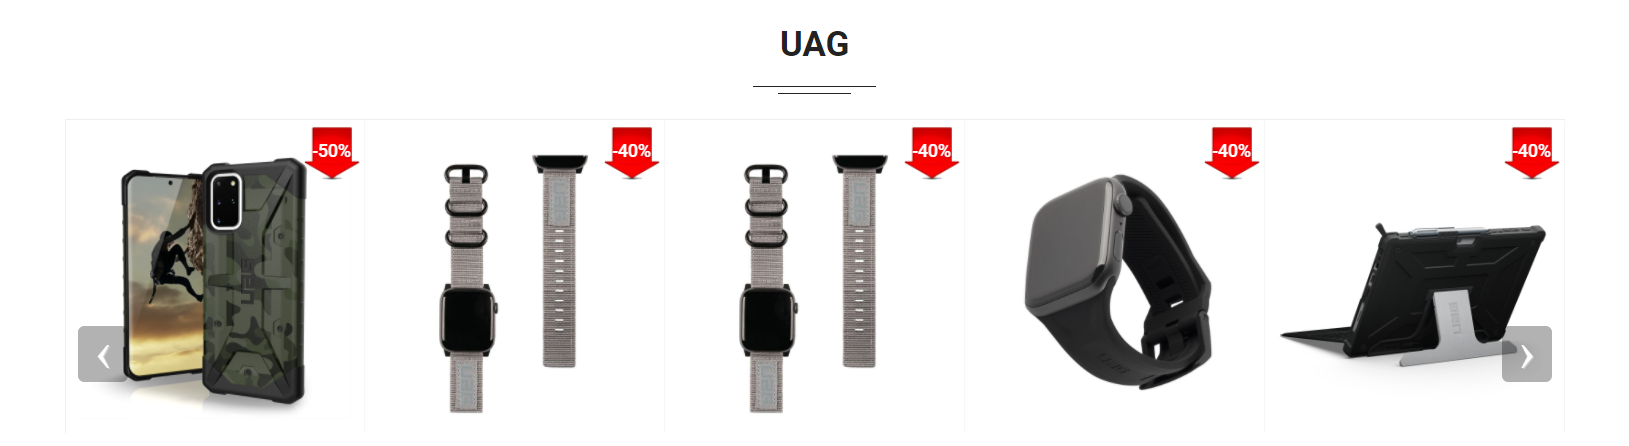 Các sản phẩm của UAG cũng được khuyến mãi siêu khủng